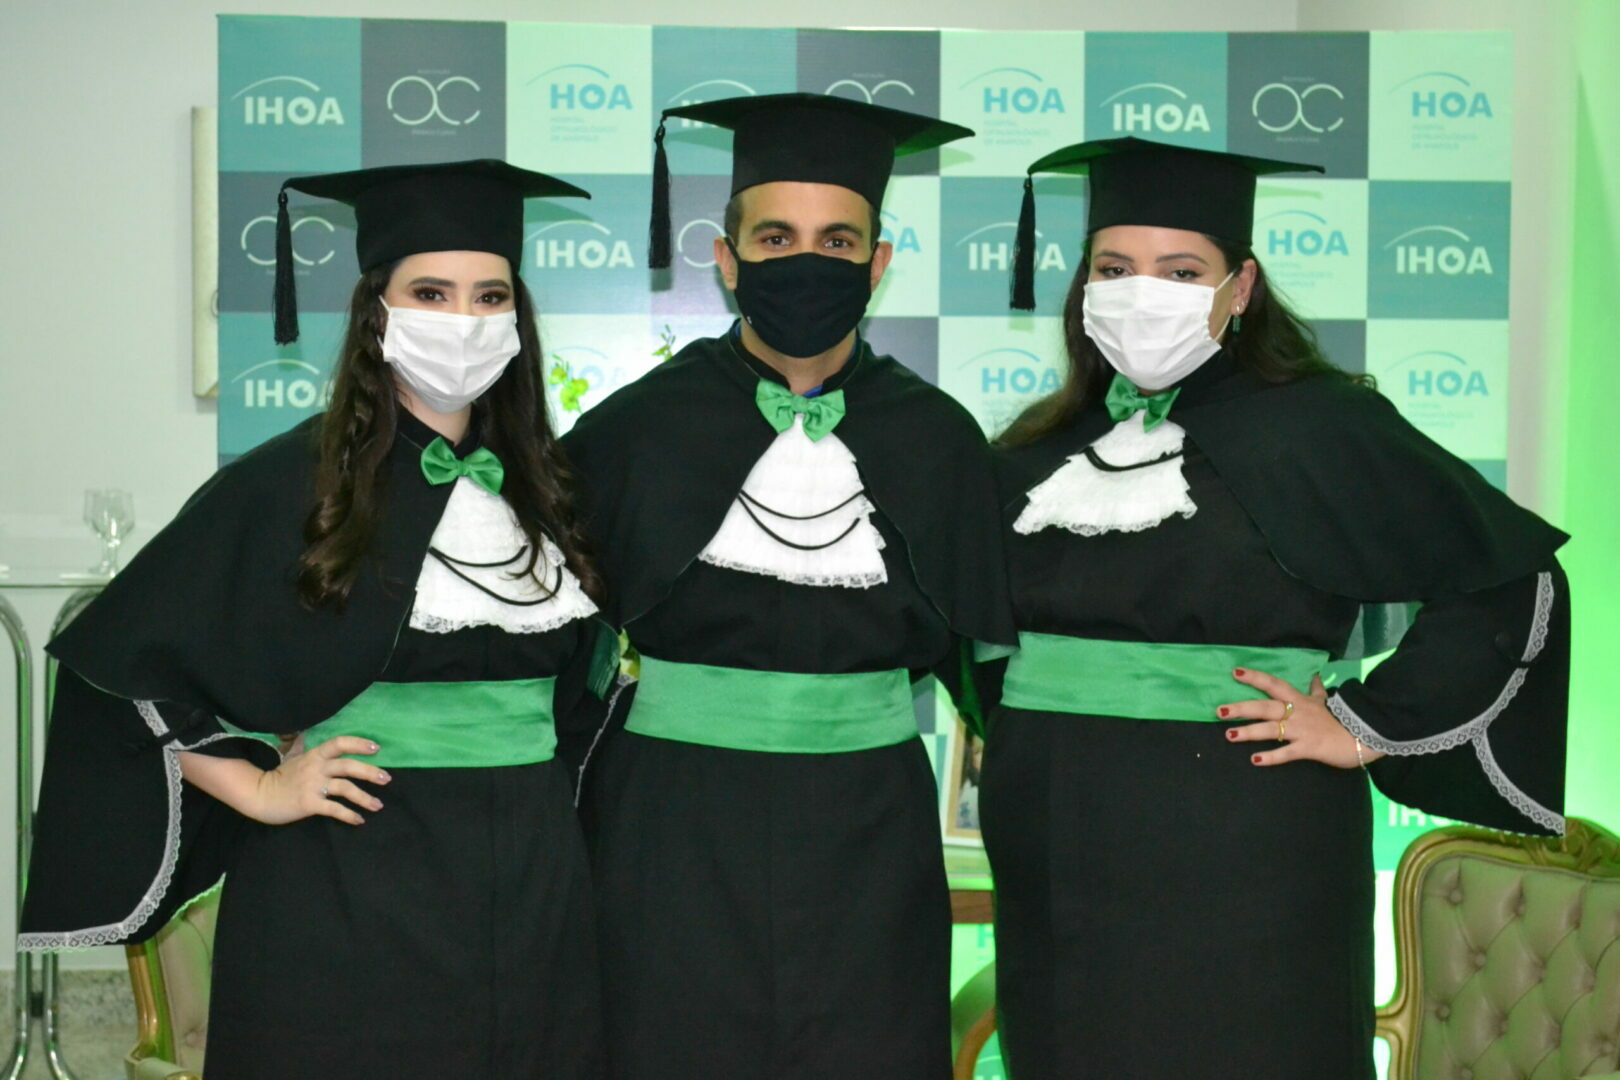 HOA celebra mais uma formatura dos residentes em oftalmologia